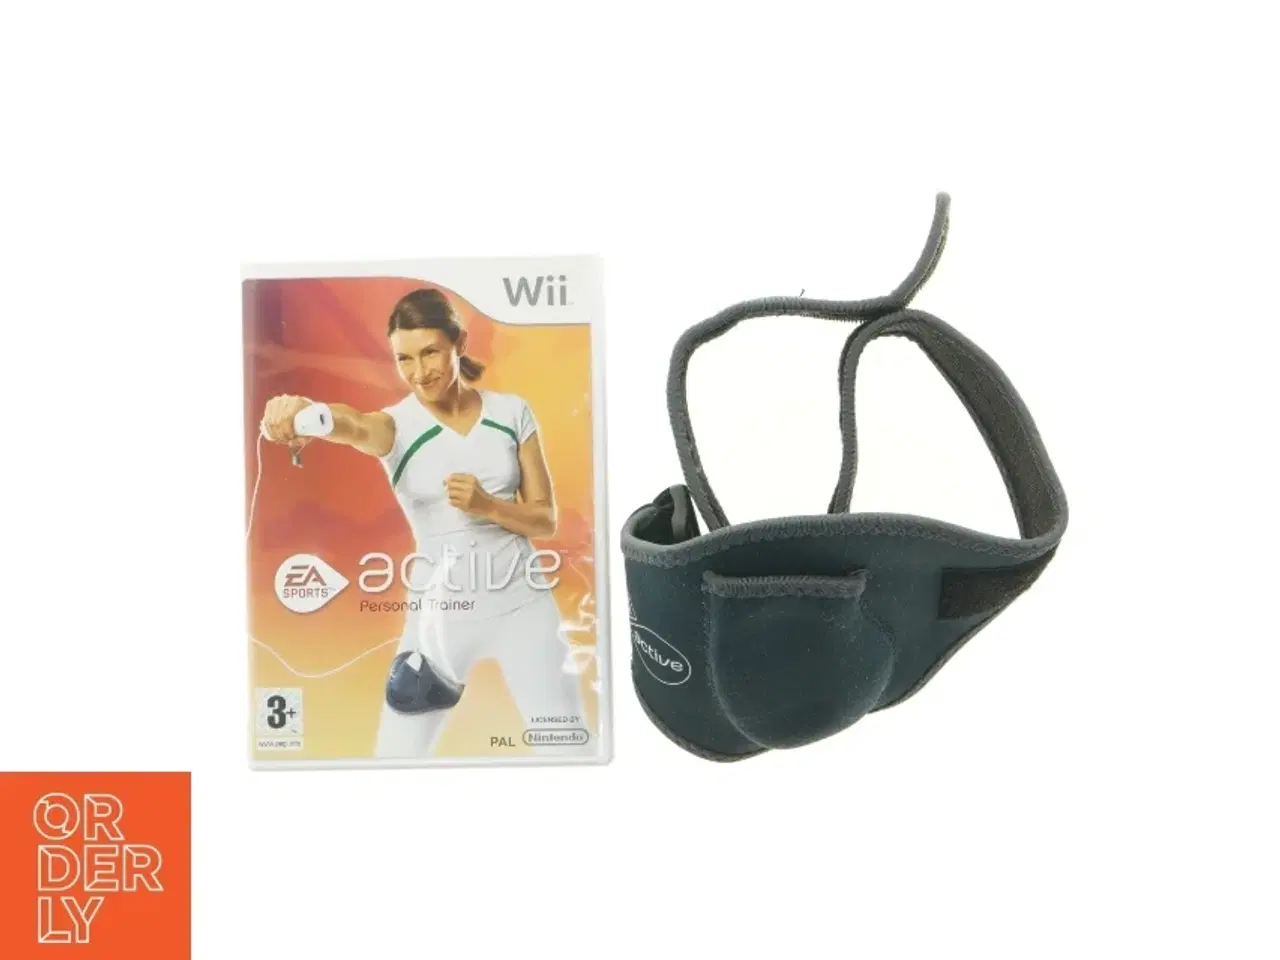 Billede 1 - Wii fitness og tilbehør fra EA Sports (str. 74 x 14 cm)